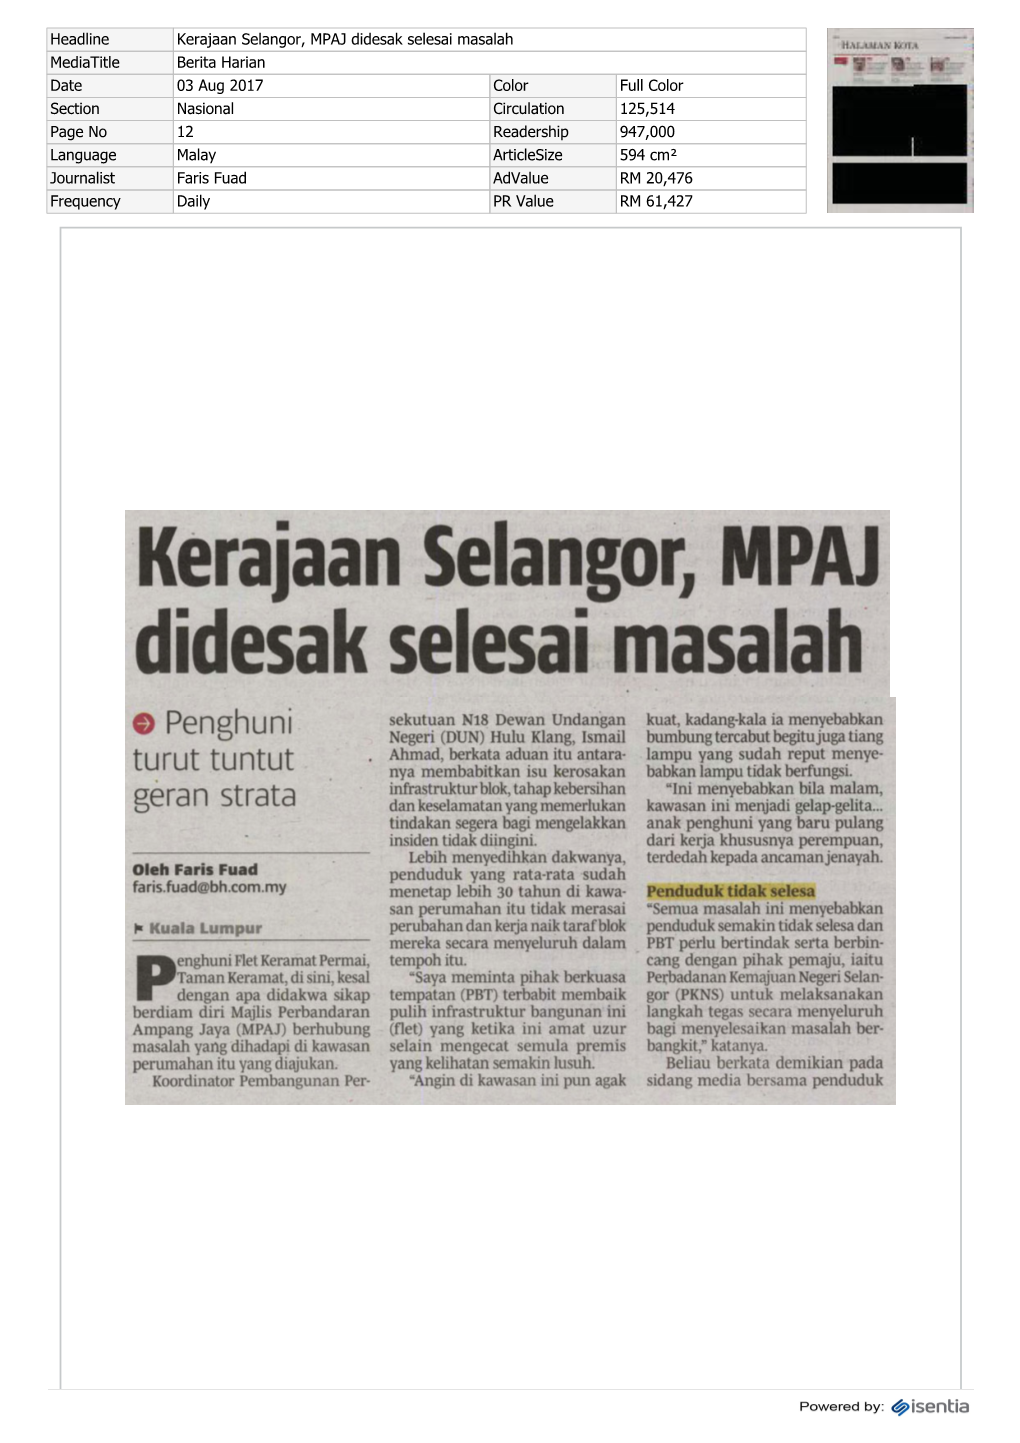 Kerajaan Selangor, MPAJ Didesak Selesai Masalah